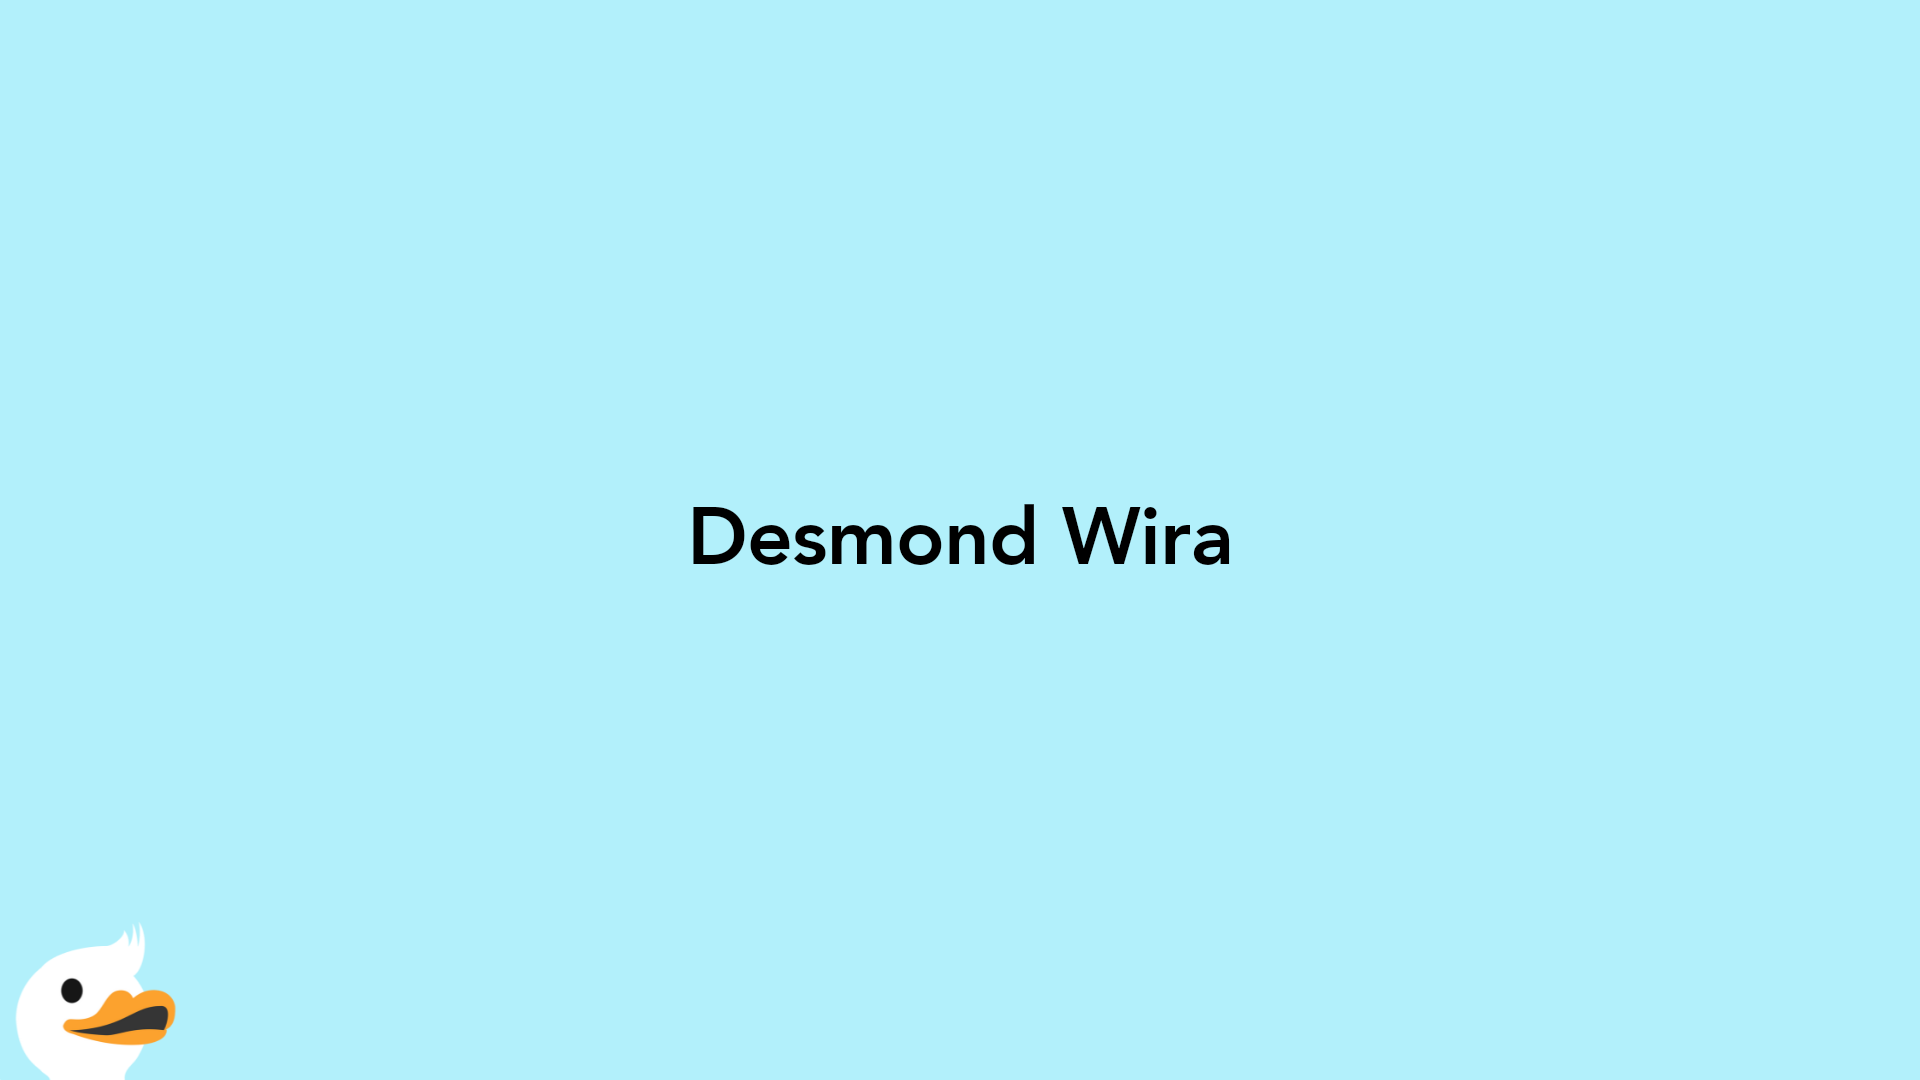 Desmond Wira